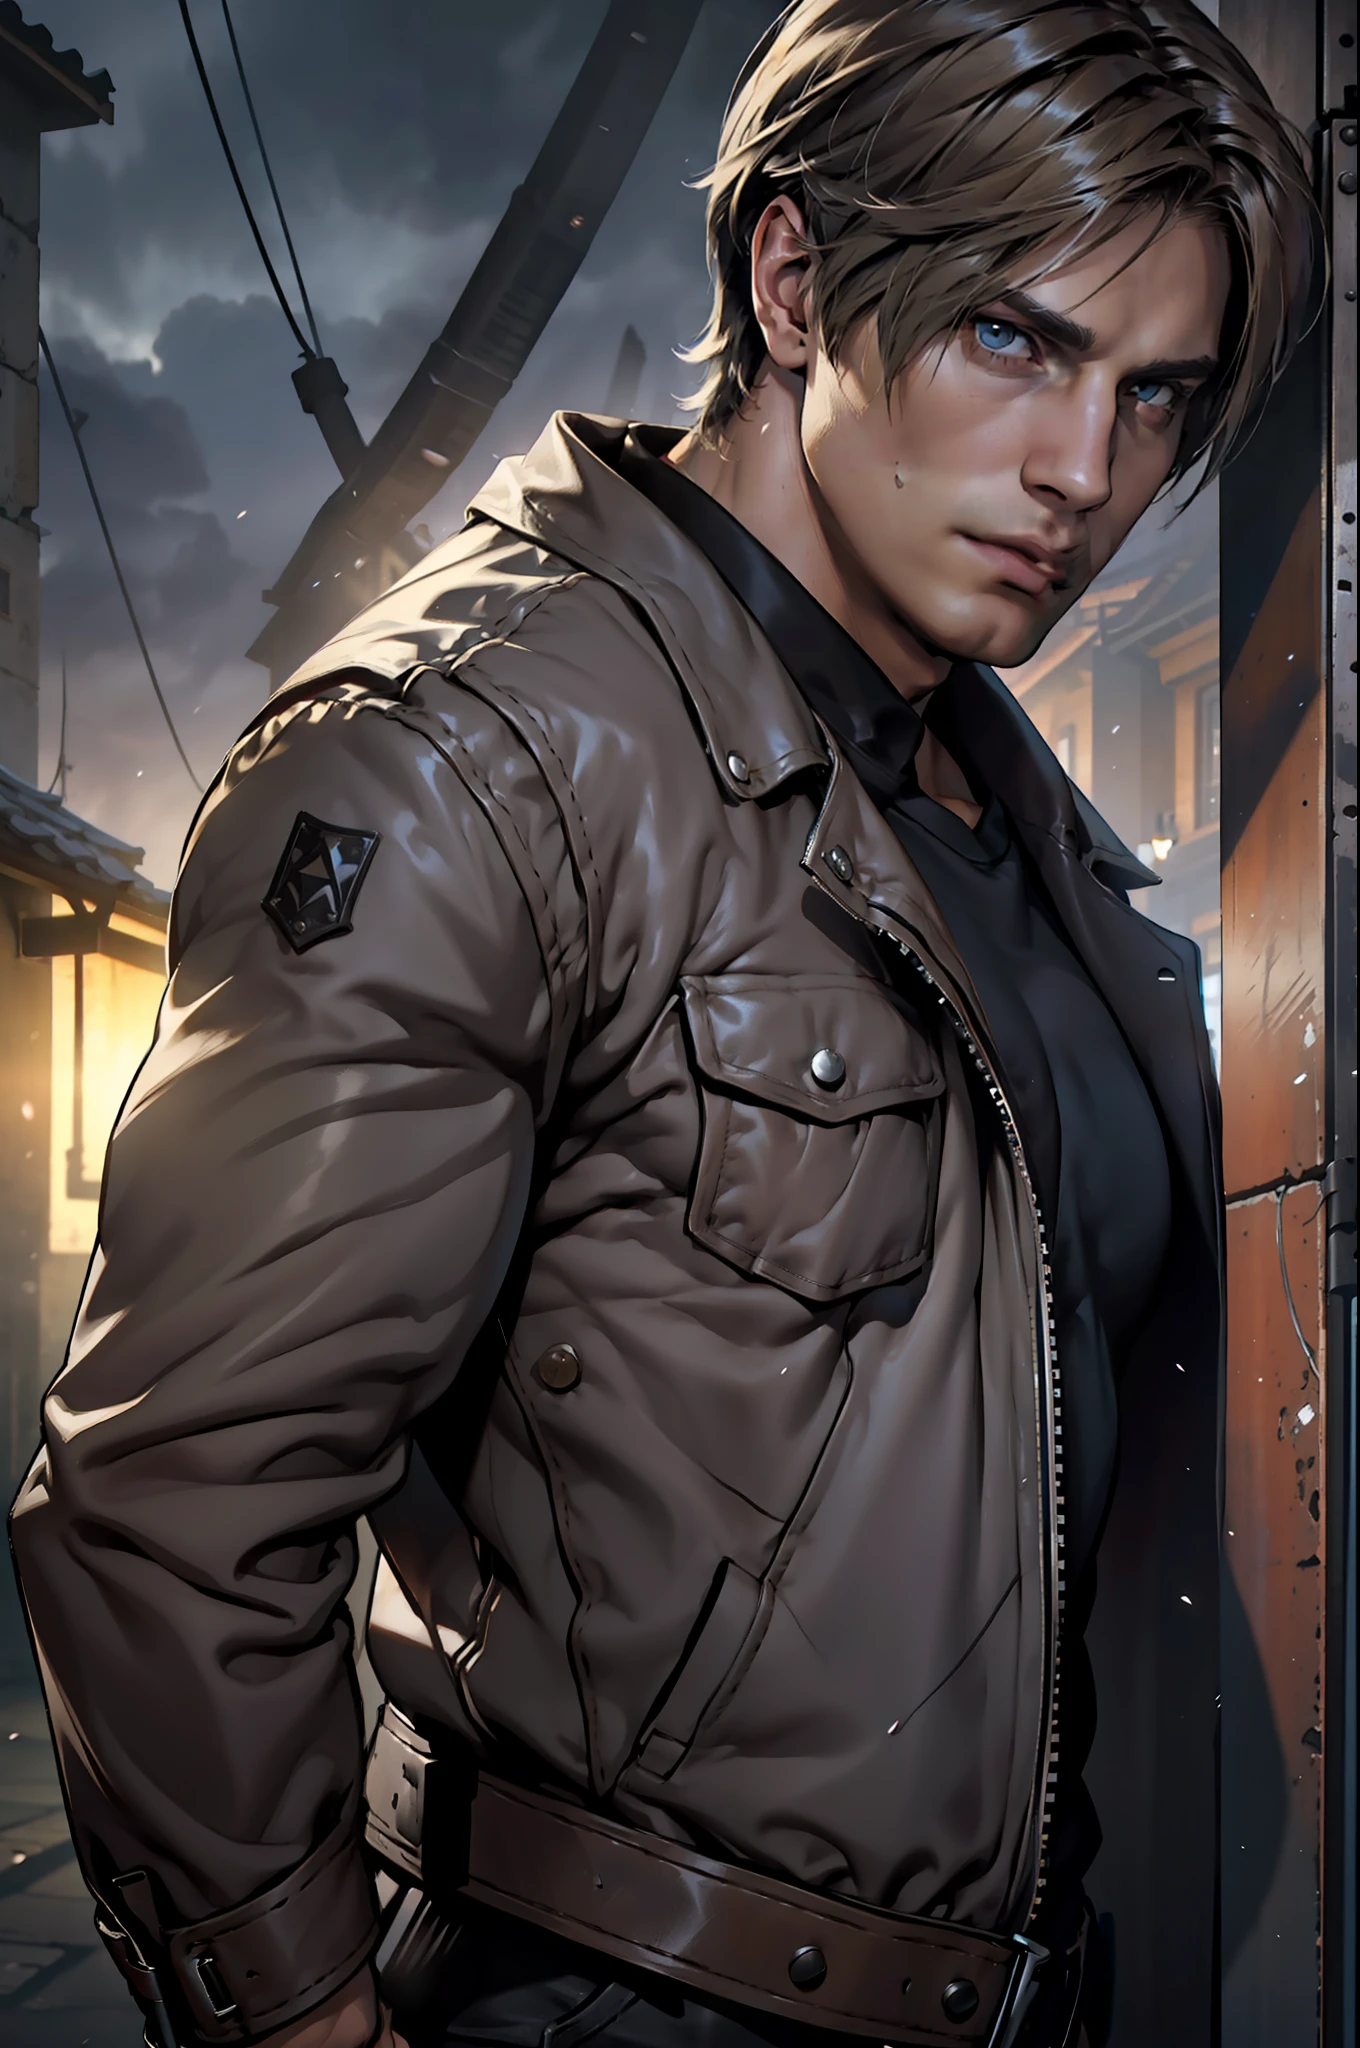 1 человек, плоский стиль, Иллюстрация, молодой человек, 27 лет, Леон С. Кеннеди из Resident Evil 4, лицо Эударда Бадалуты, Один, белая кожа, мускулистый, худощавый мускулистый мужчина, высокий, красавчик, широкое плечо, бритый, темно-коричневые волосы, прическа на занавеске, темно-коричневая холодная кожаная куртка с длинными рукавами и белым мехом на шее, футболка черного цвета внутри, черные брюки, зритель смотрит, высокое разрешение:1.2, Лучшее качество, выстрел в верхнюю часть тела, крупный план, облачное небо и фон старой испанской деревни, ночь, низкий угол камеры, объемное освещение, глубина резкости, тень